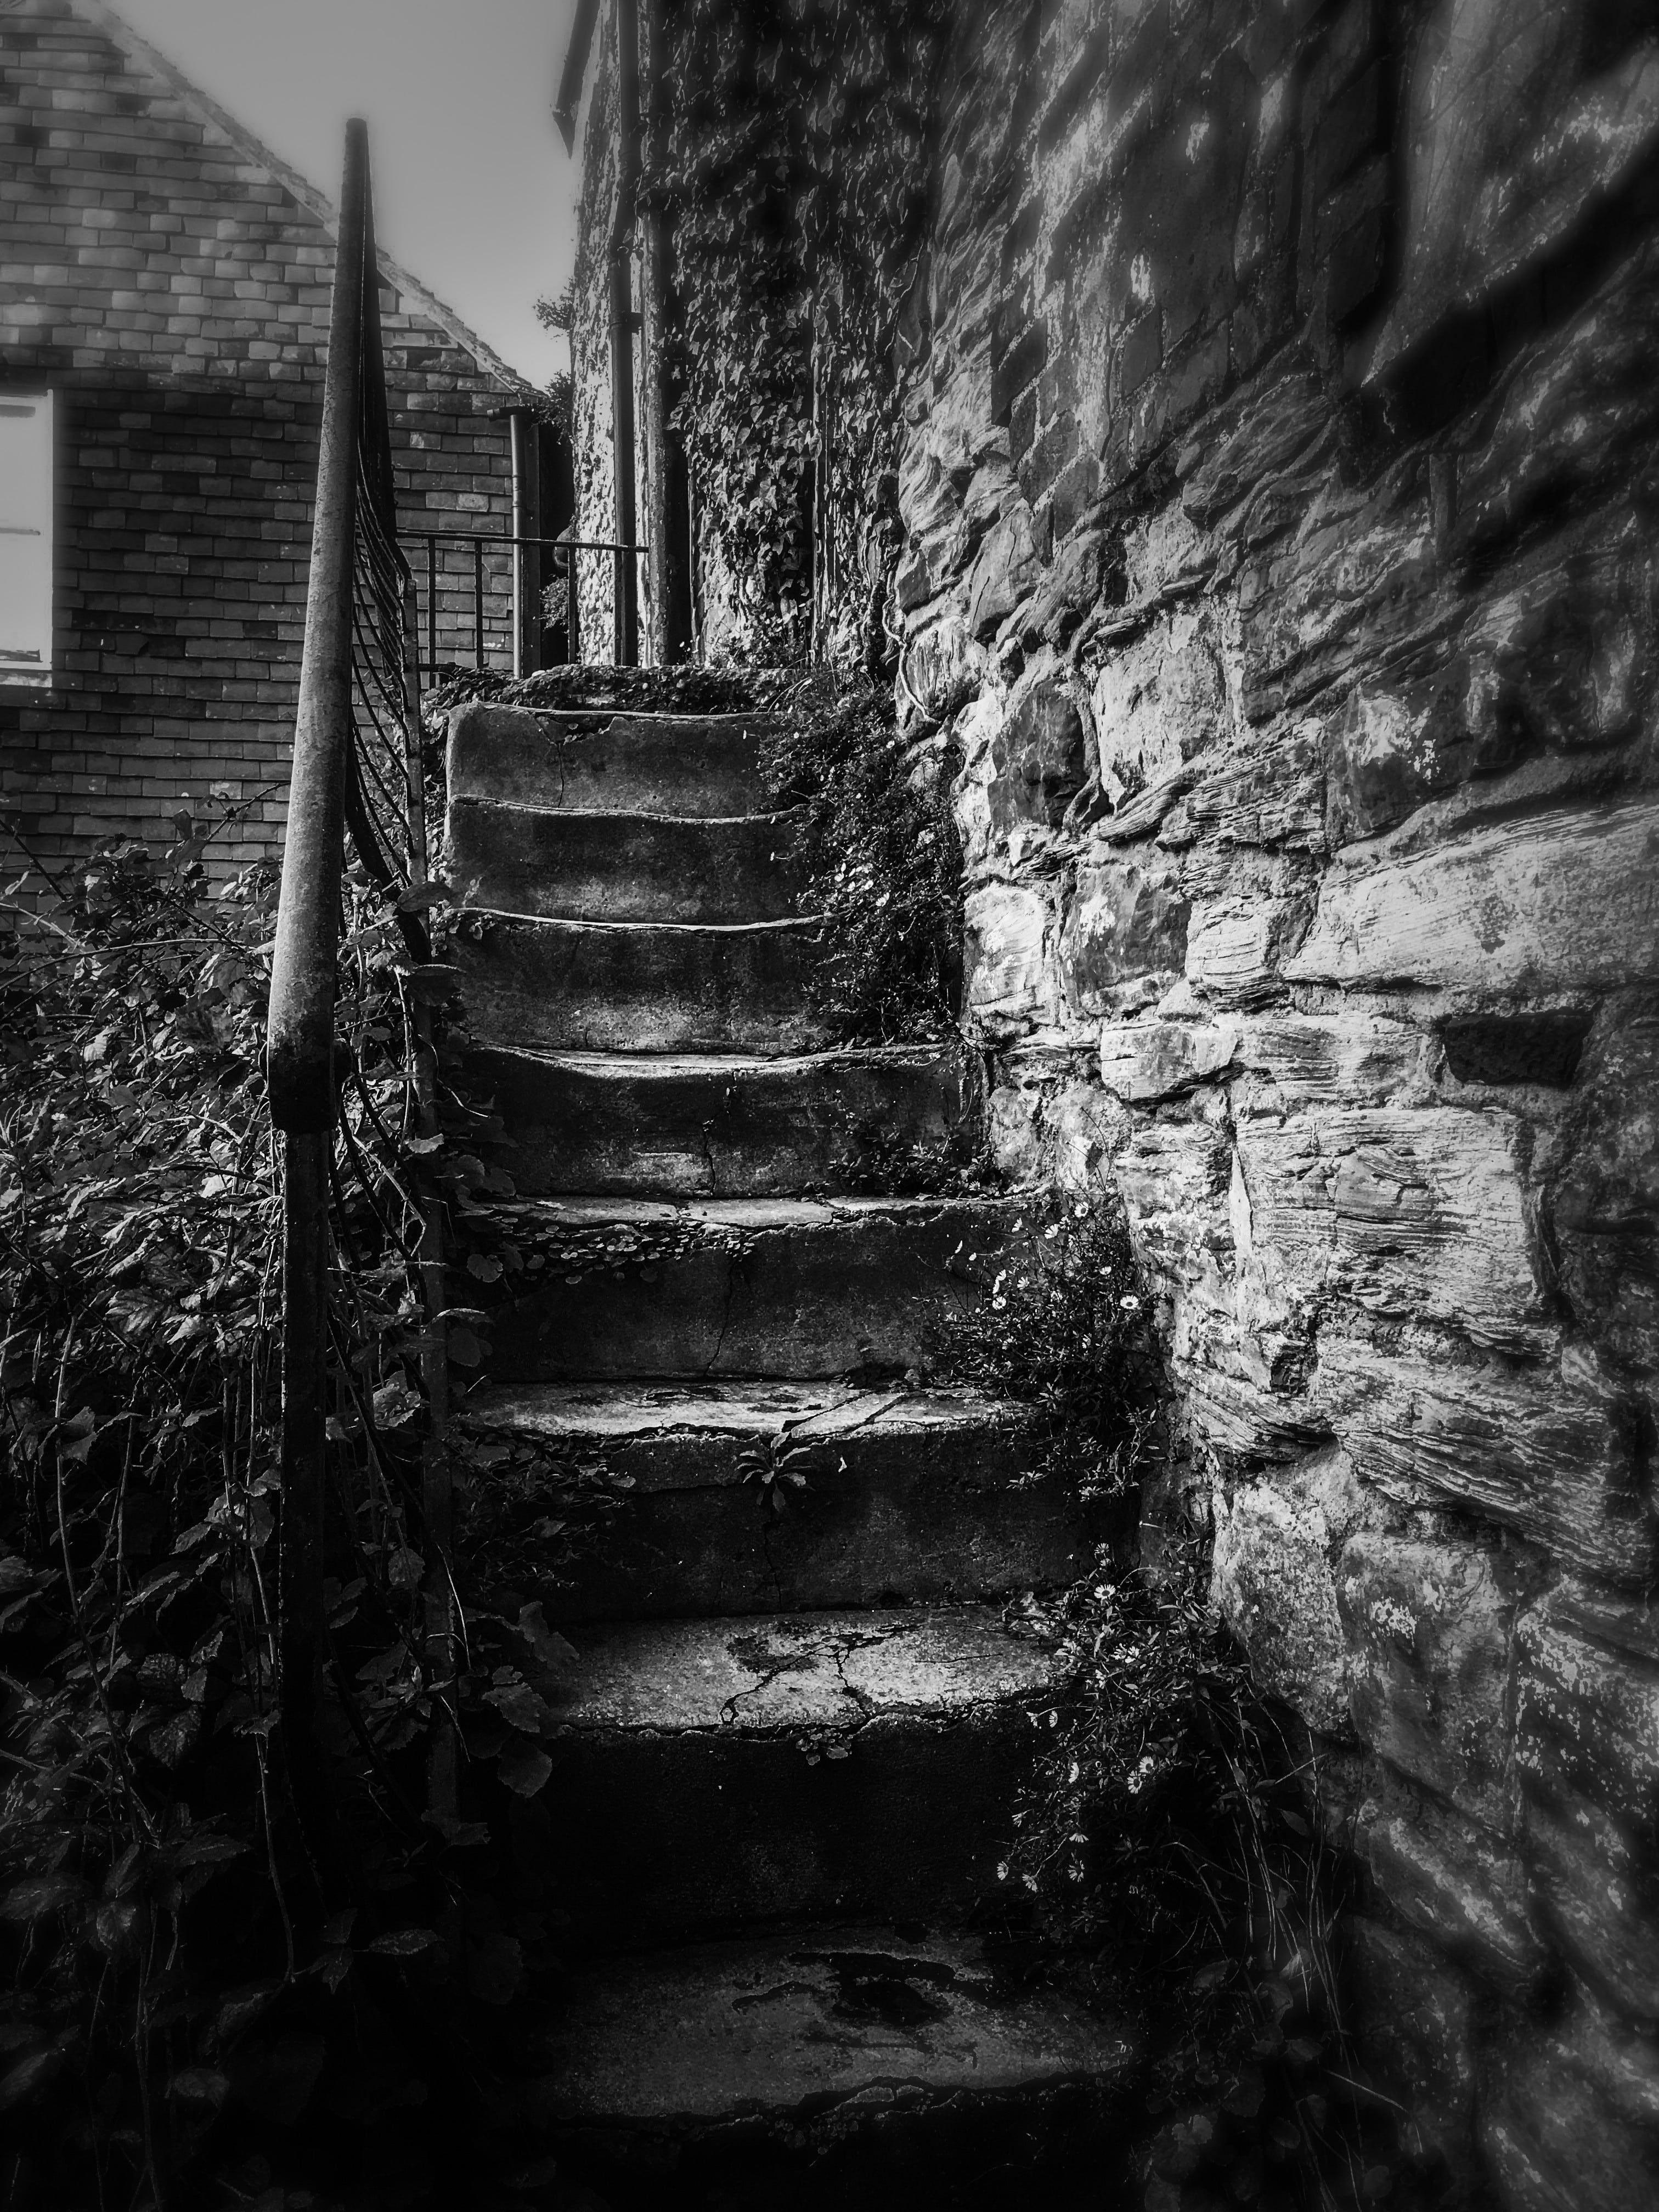 A little stairway in Rye, UK.